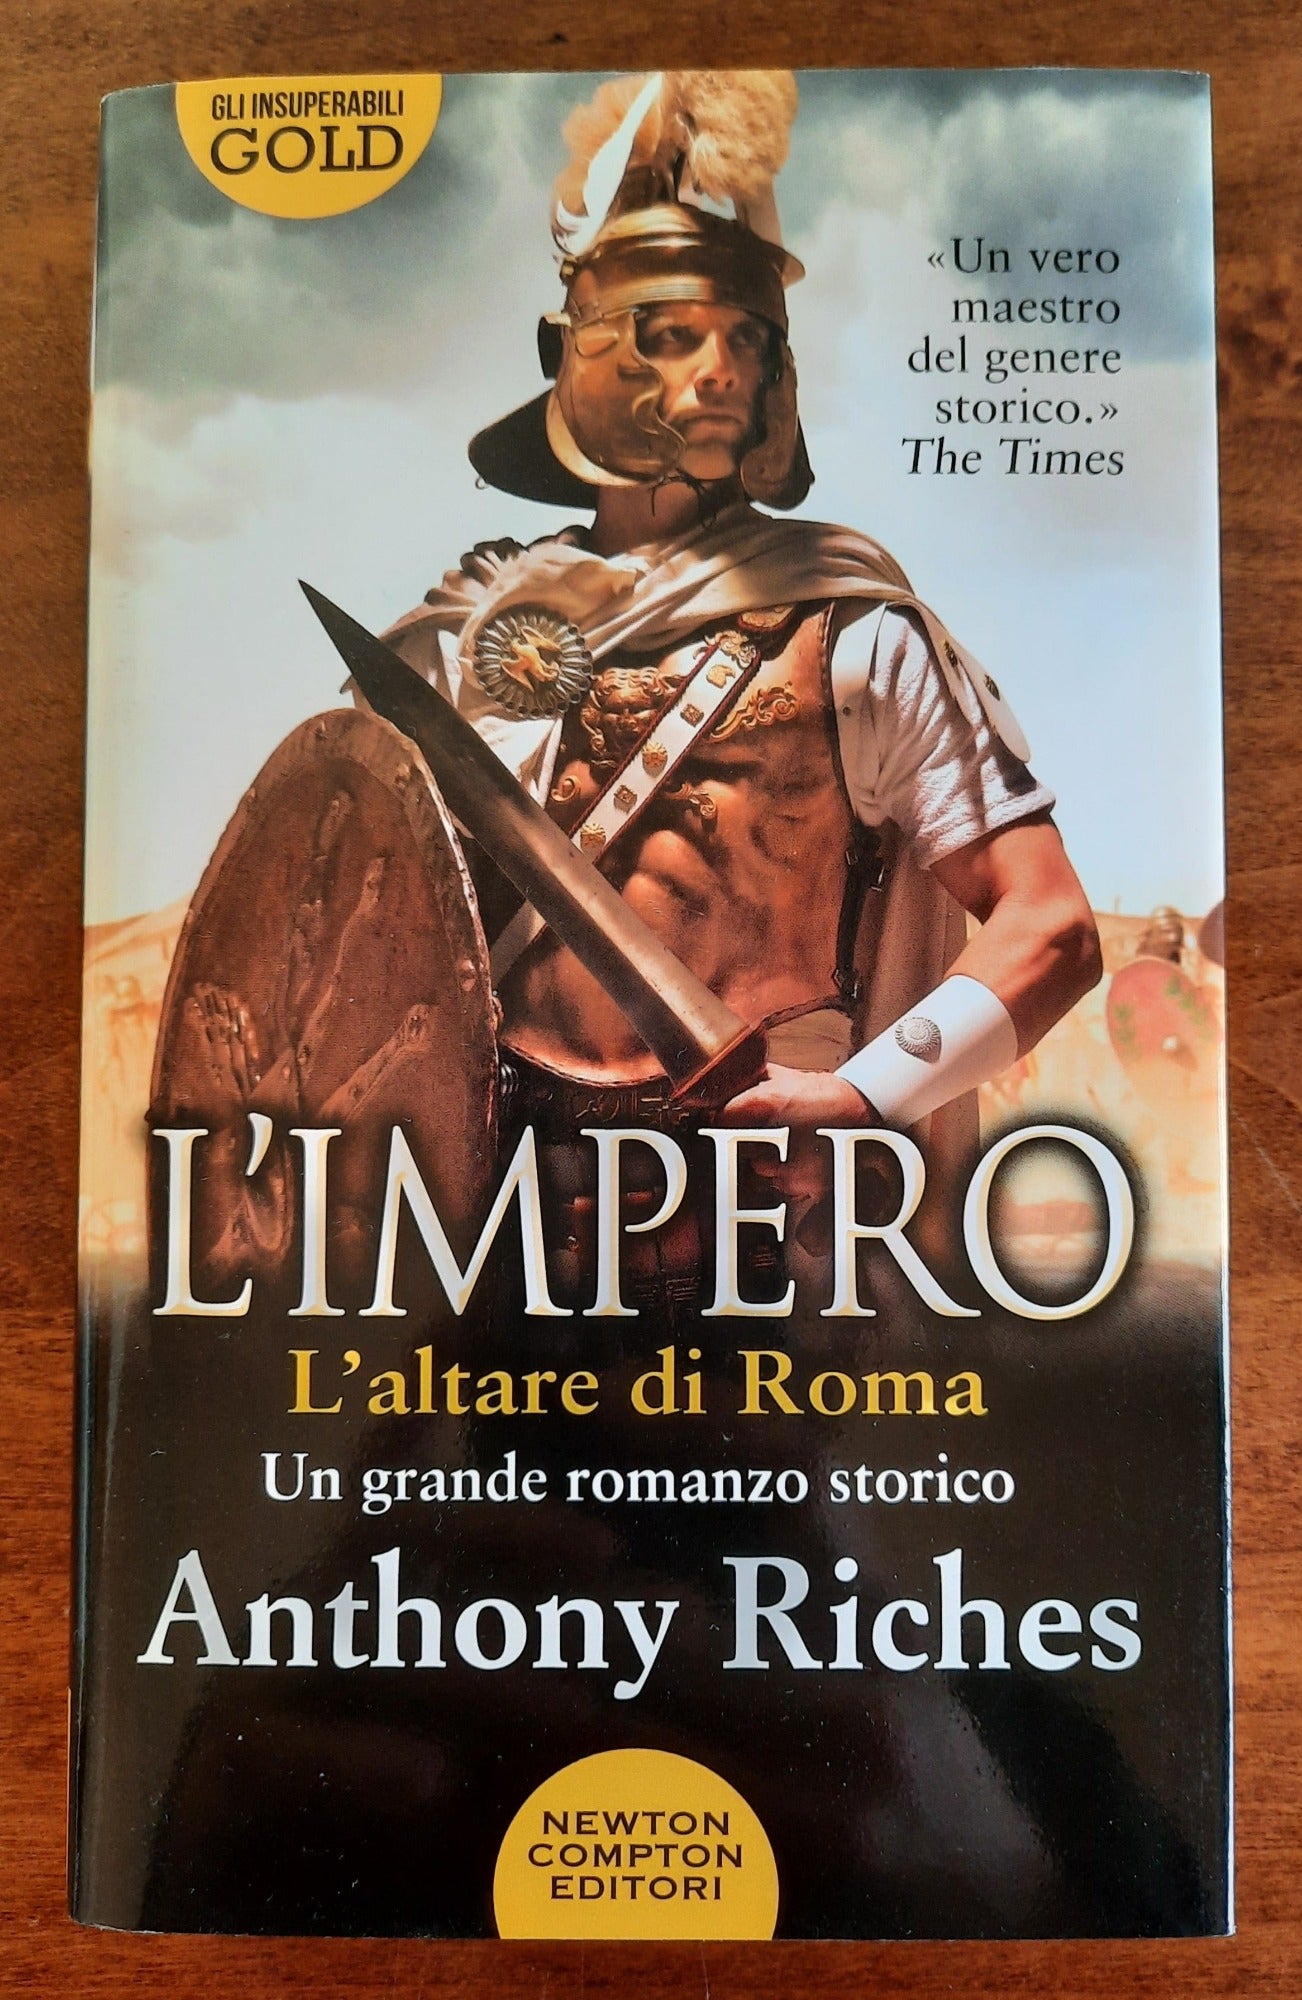 L’impero. L’altare di Roma - Newton Compton 2021